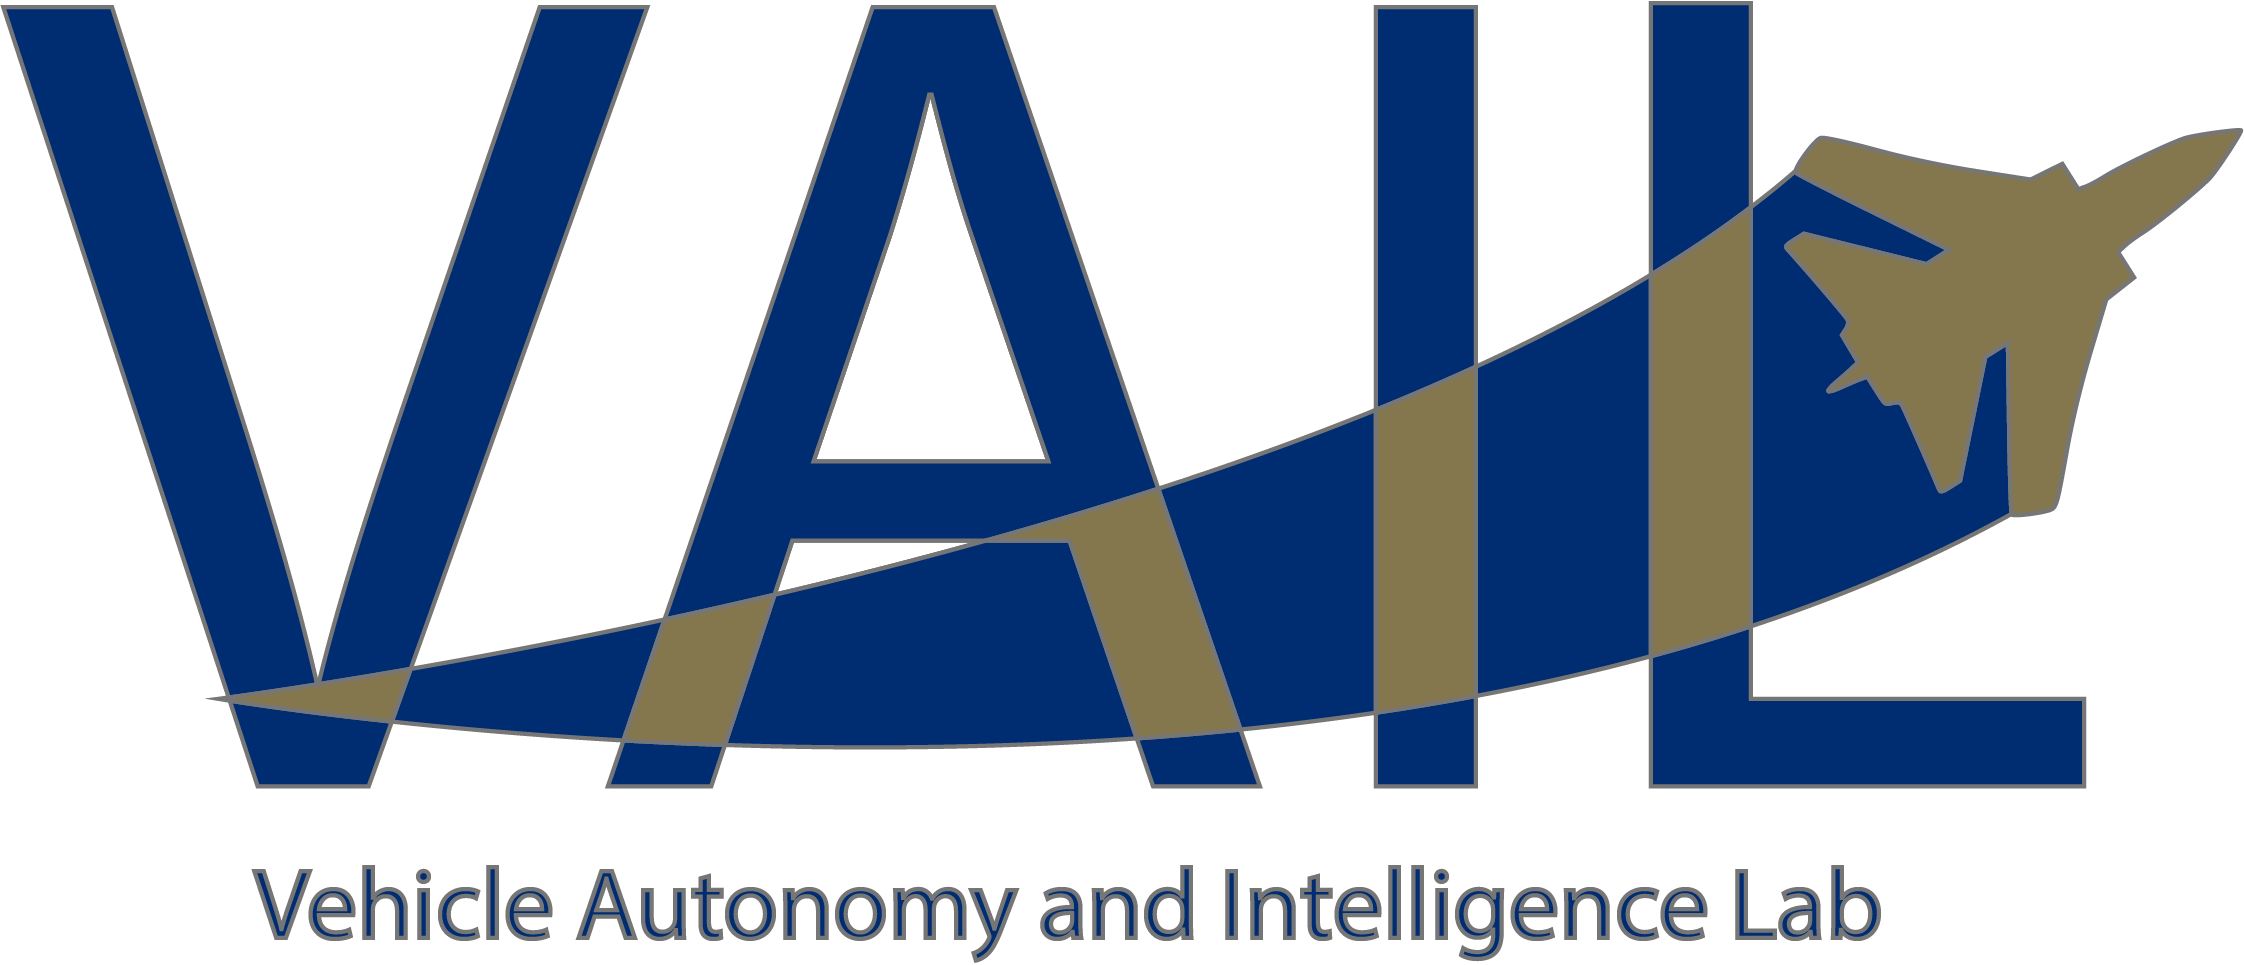 Vehicle Autonomy and Intelligence Lab